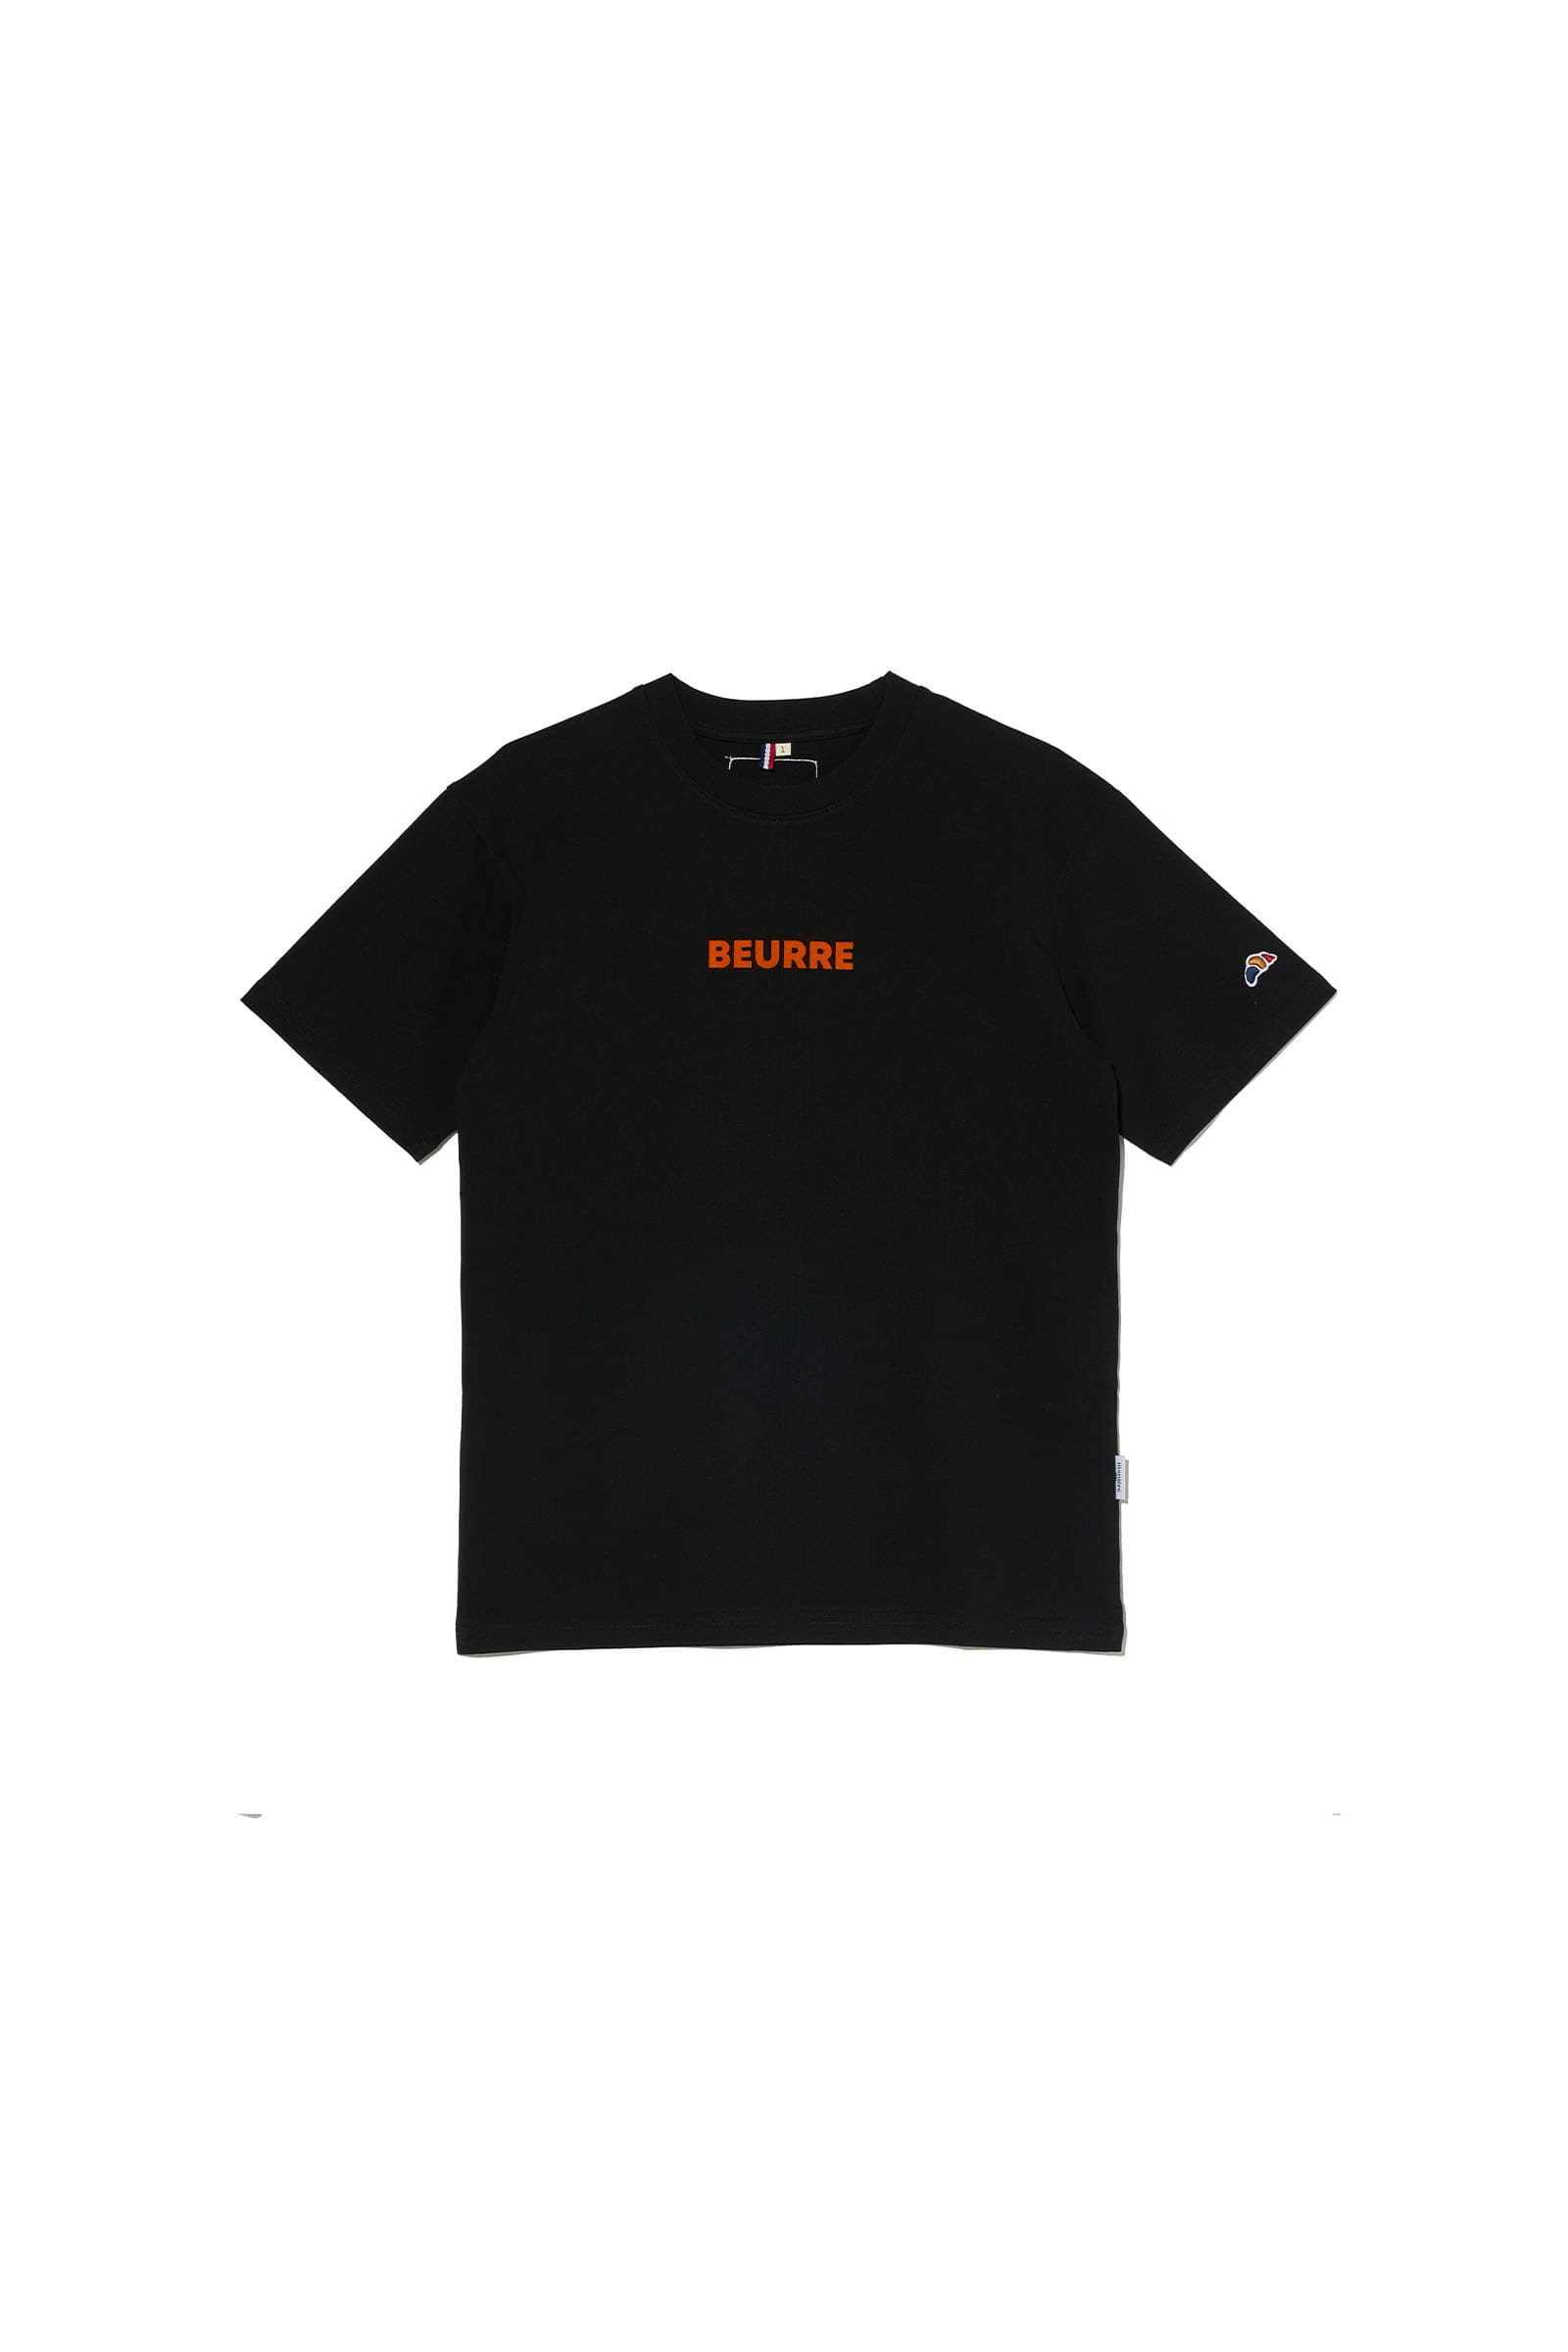 ep.6 BEURRE Mini T-shirts (Black)